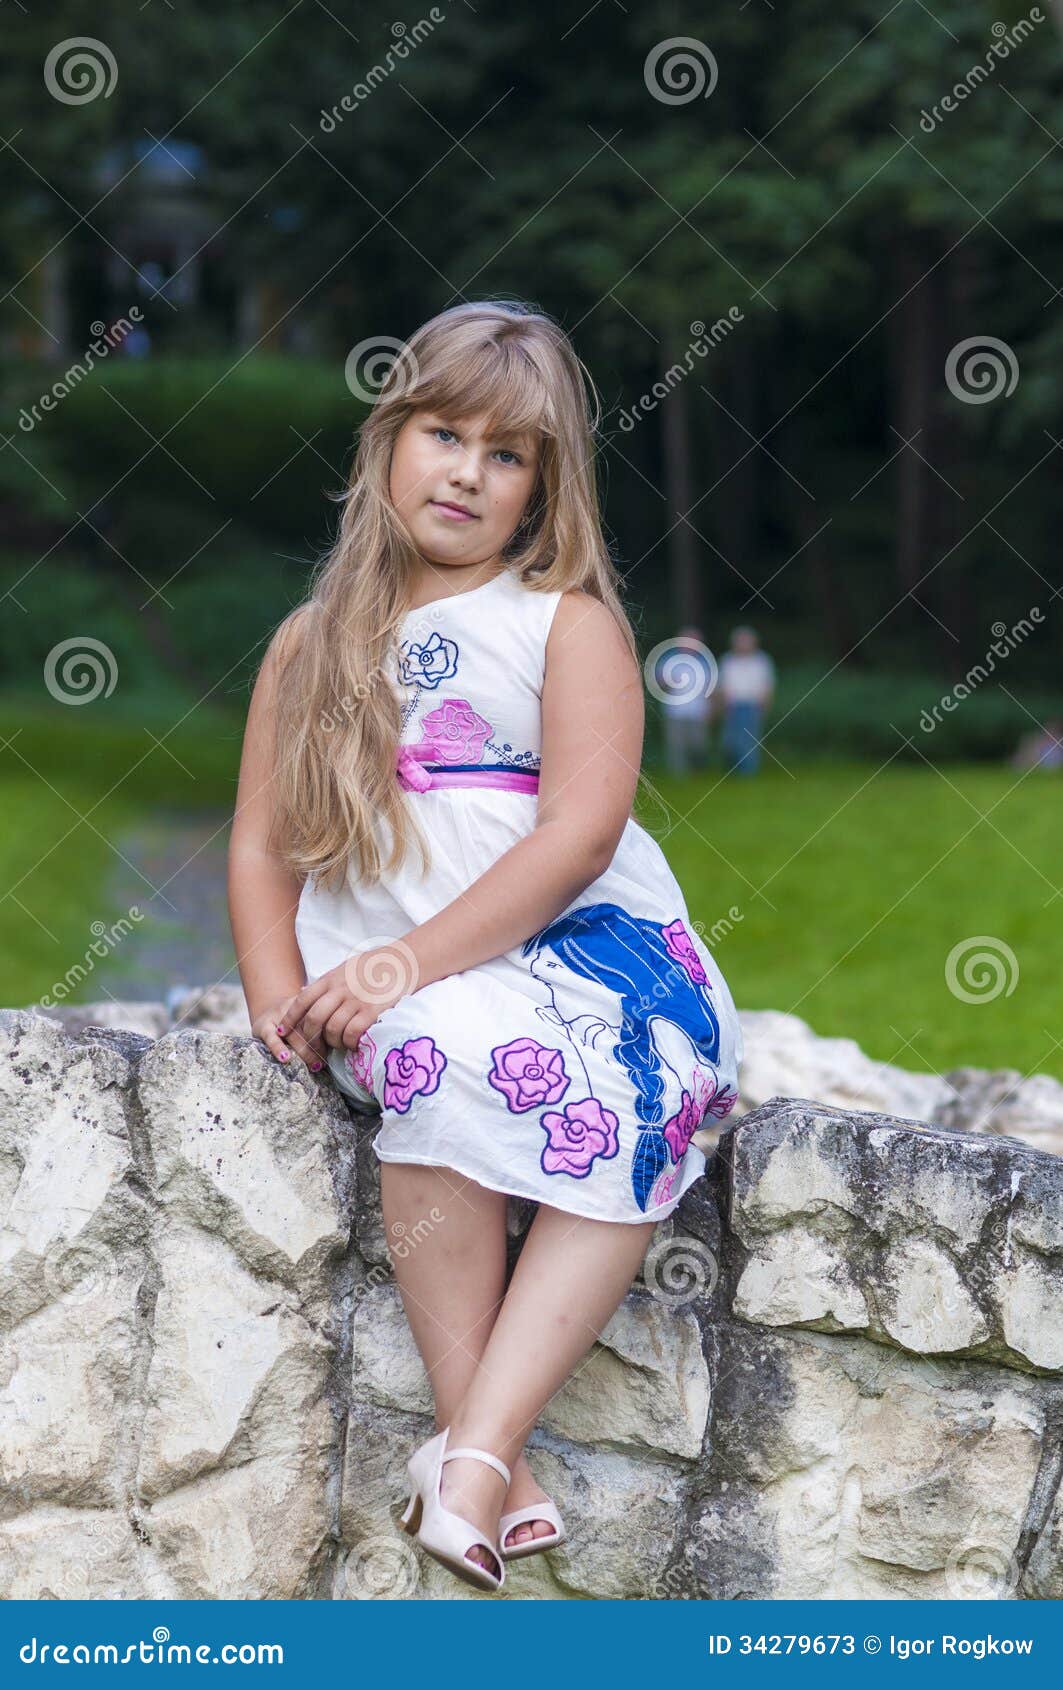 girl in summer dress